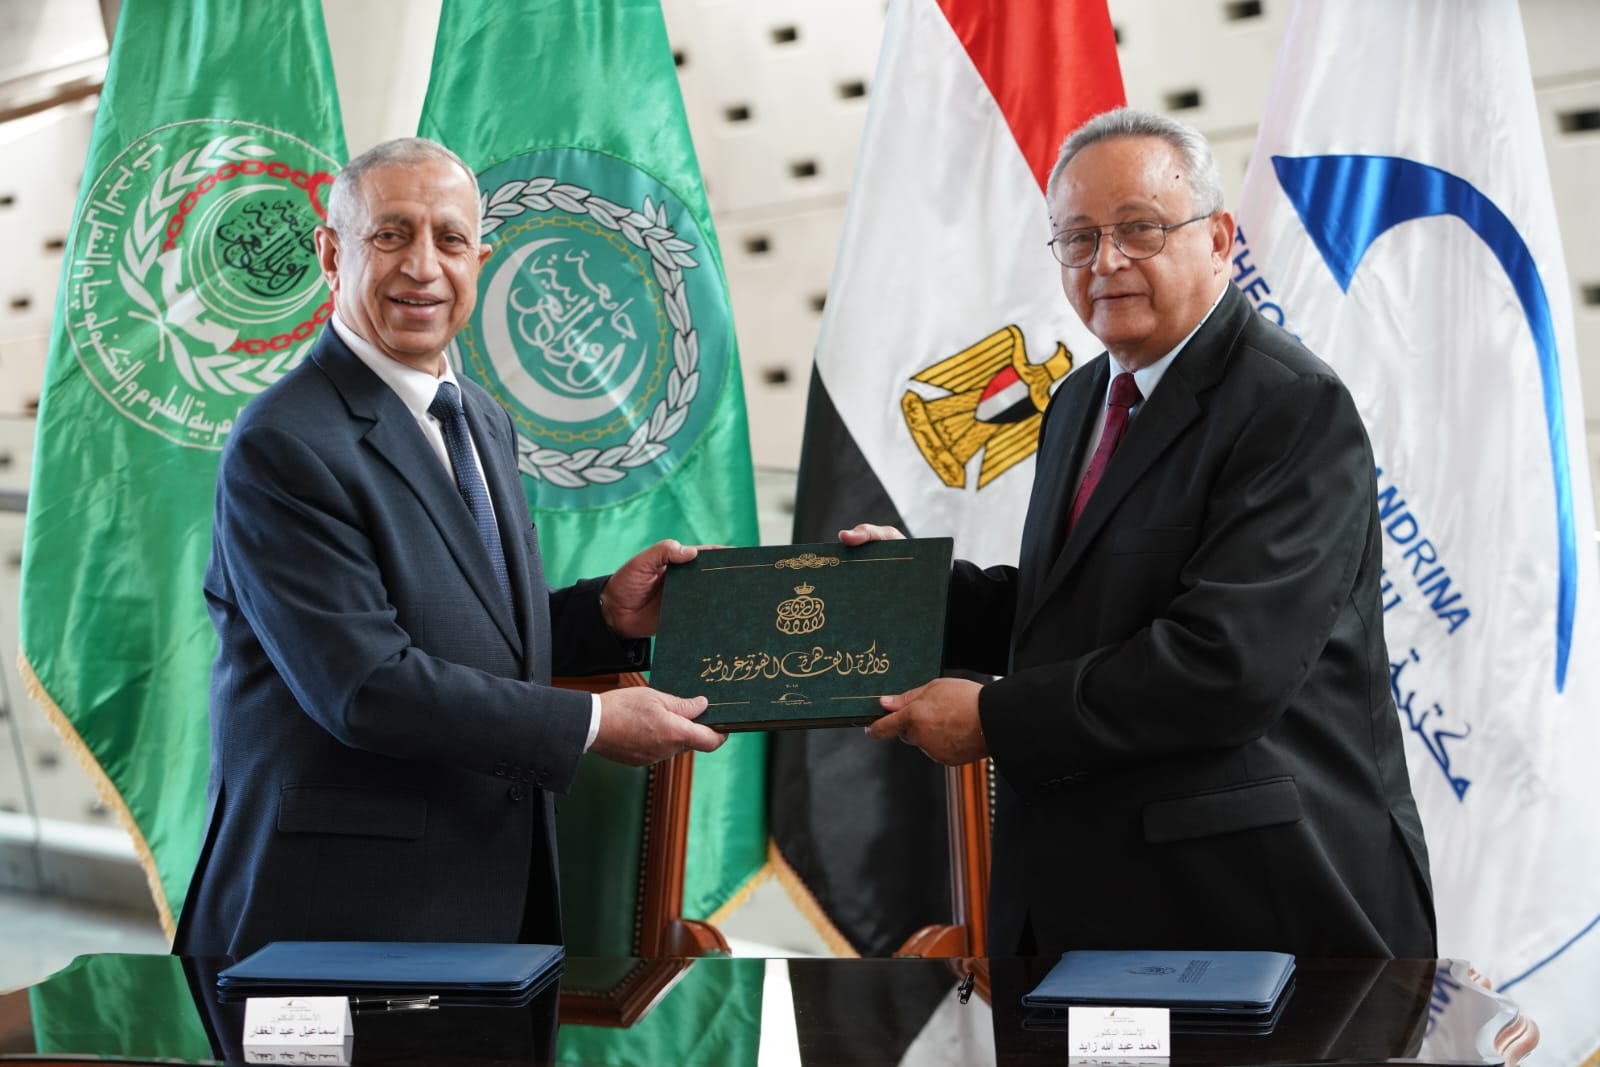 بالصور : اتفاقية تبادل و تعاون مشترك بين الأكاديمية العربية ومكتبة الإسكندرية